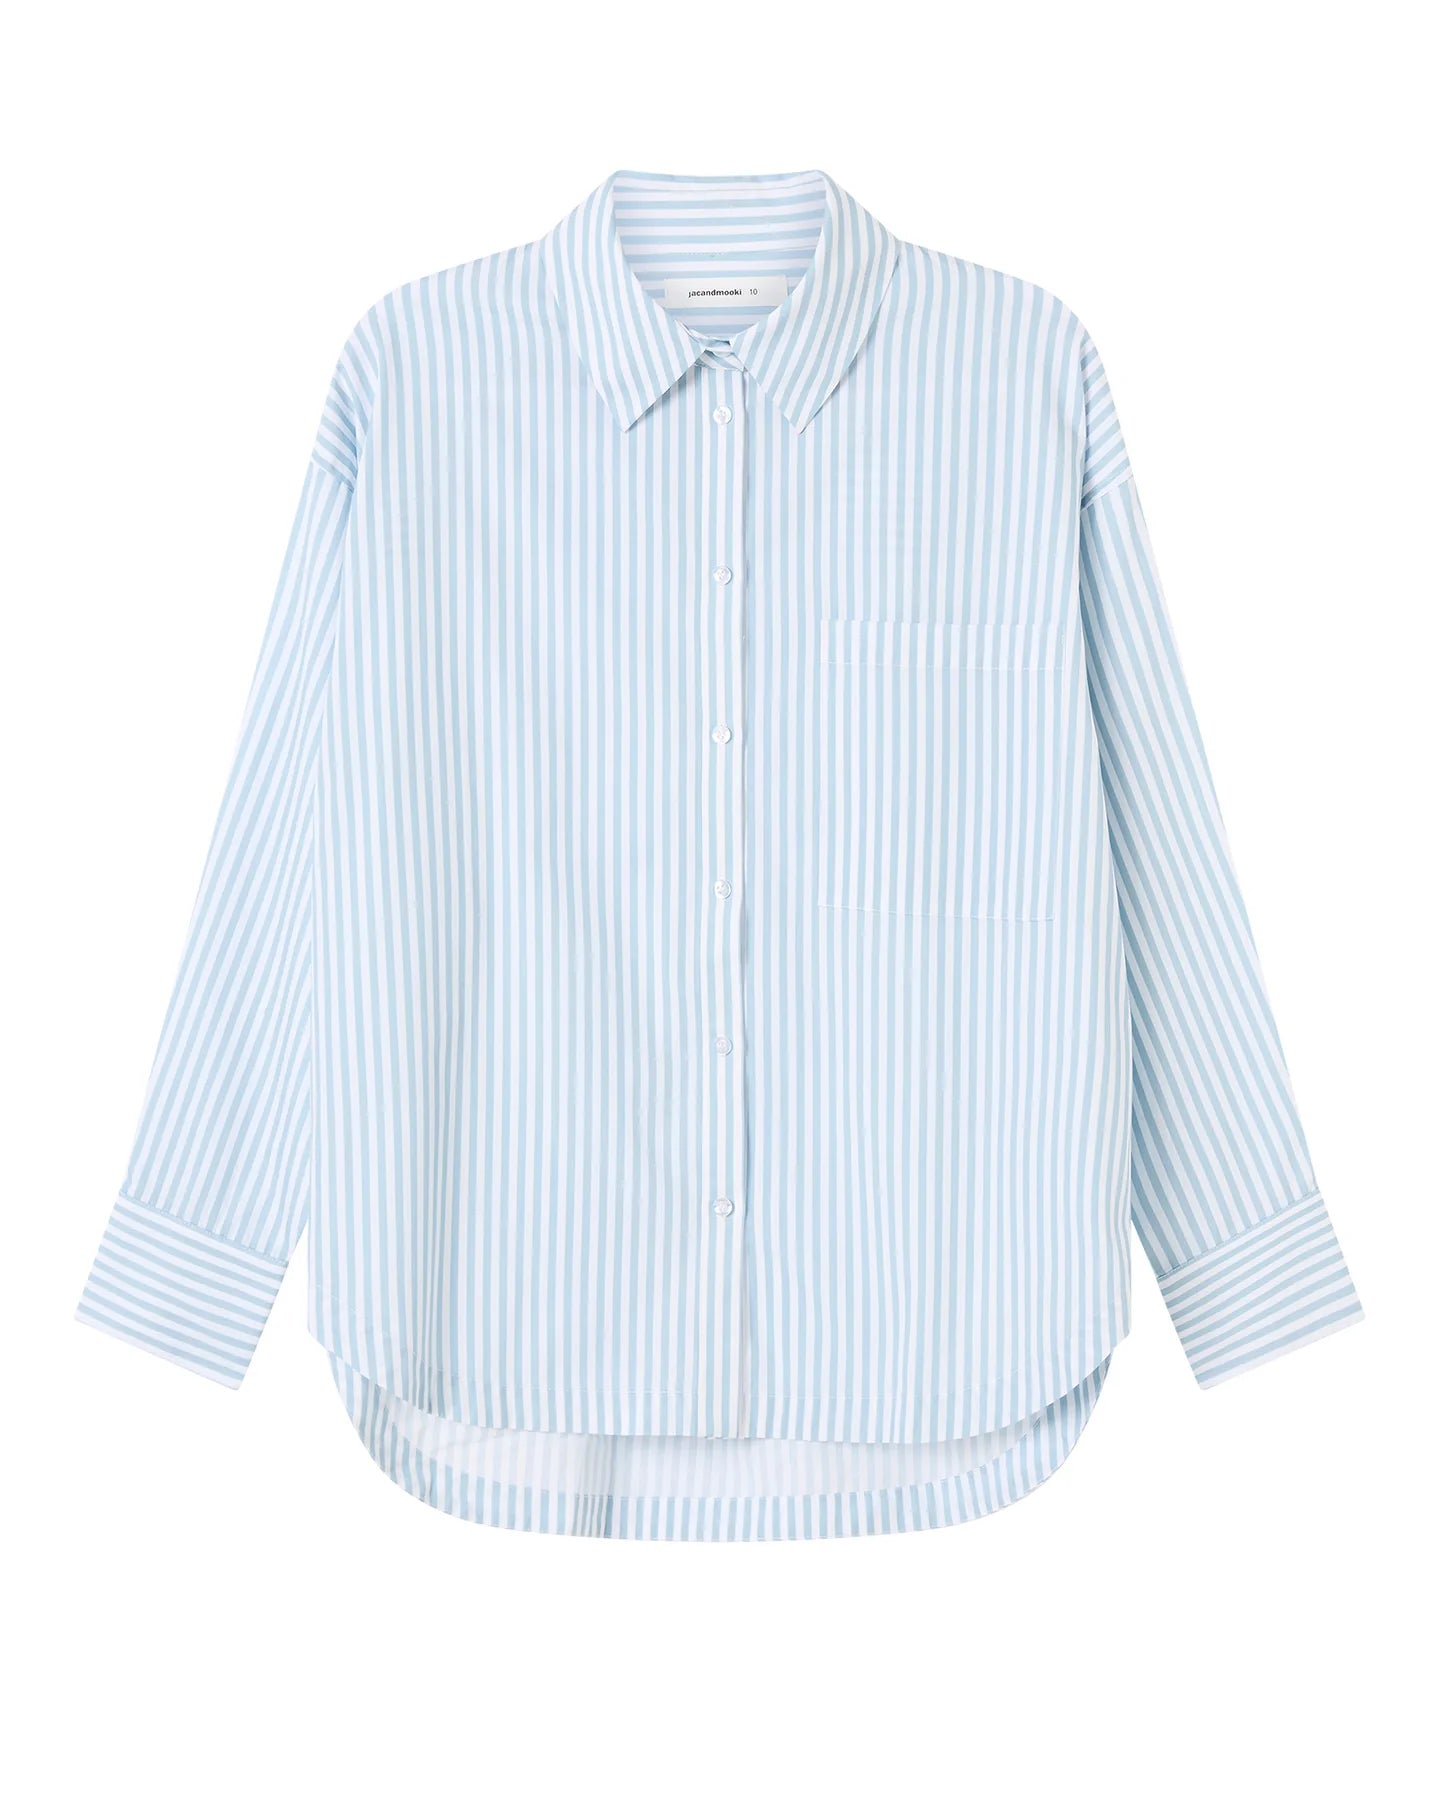 Jac + Mooki - Sloane Shirt in Blue Fog Stripe